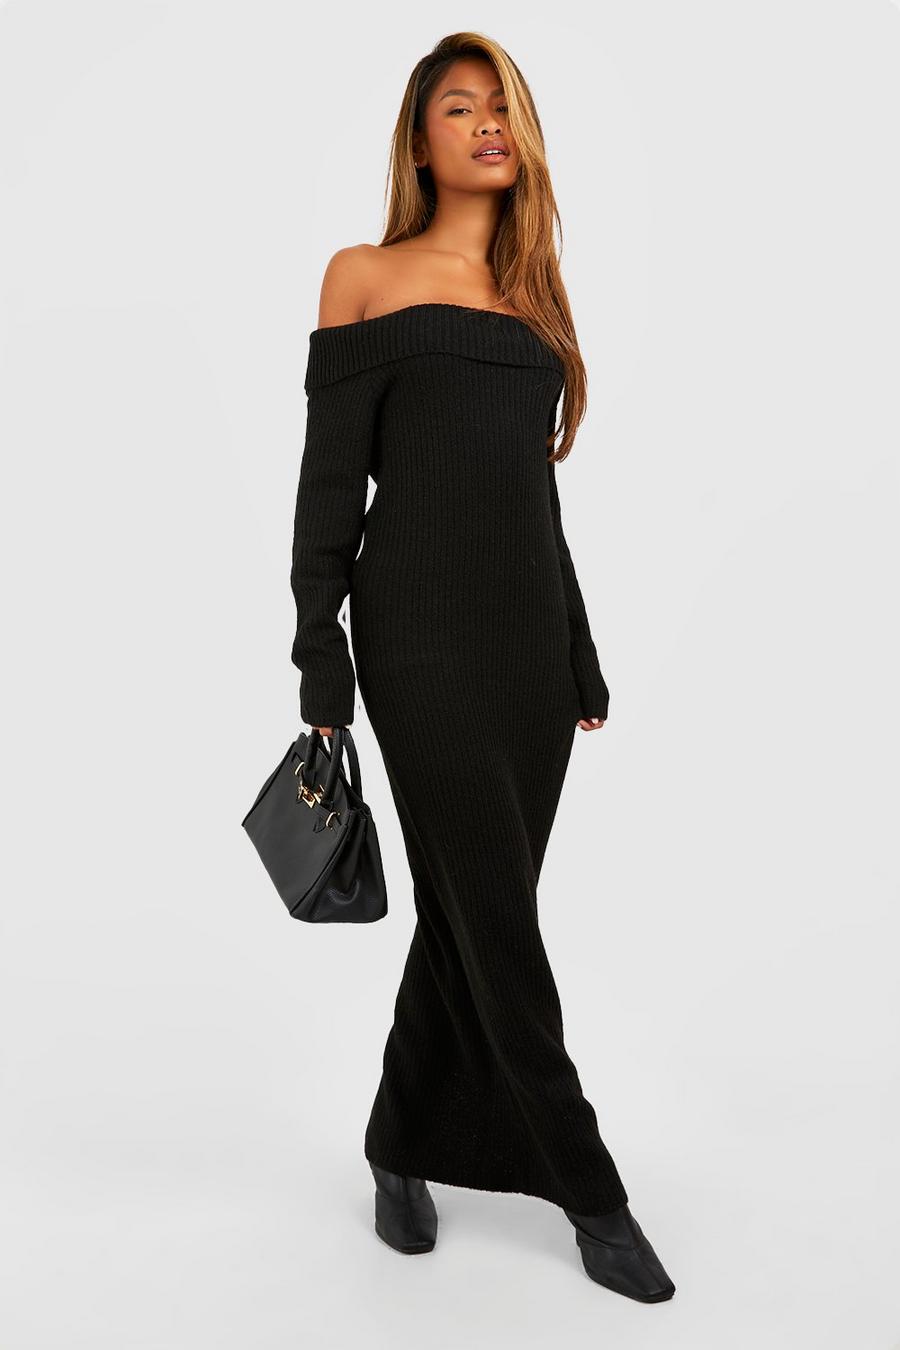 Black Soft Knit Off The Shoulder Maxi Jupmer Dress